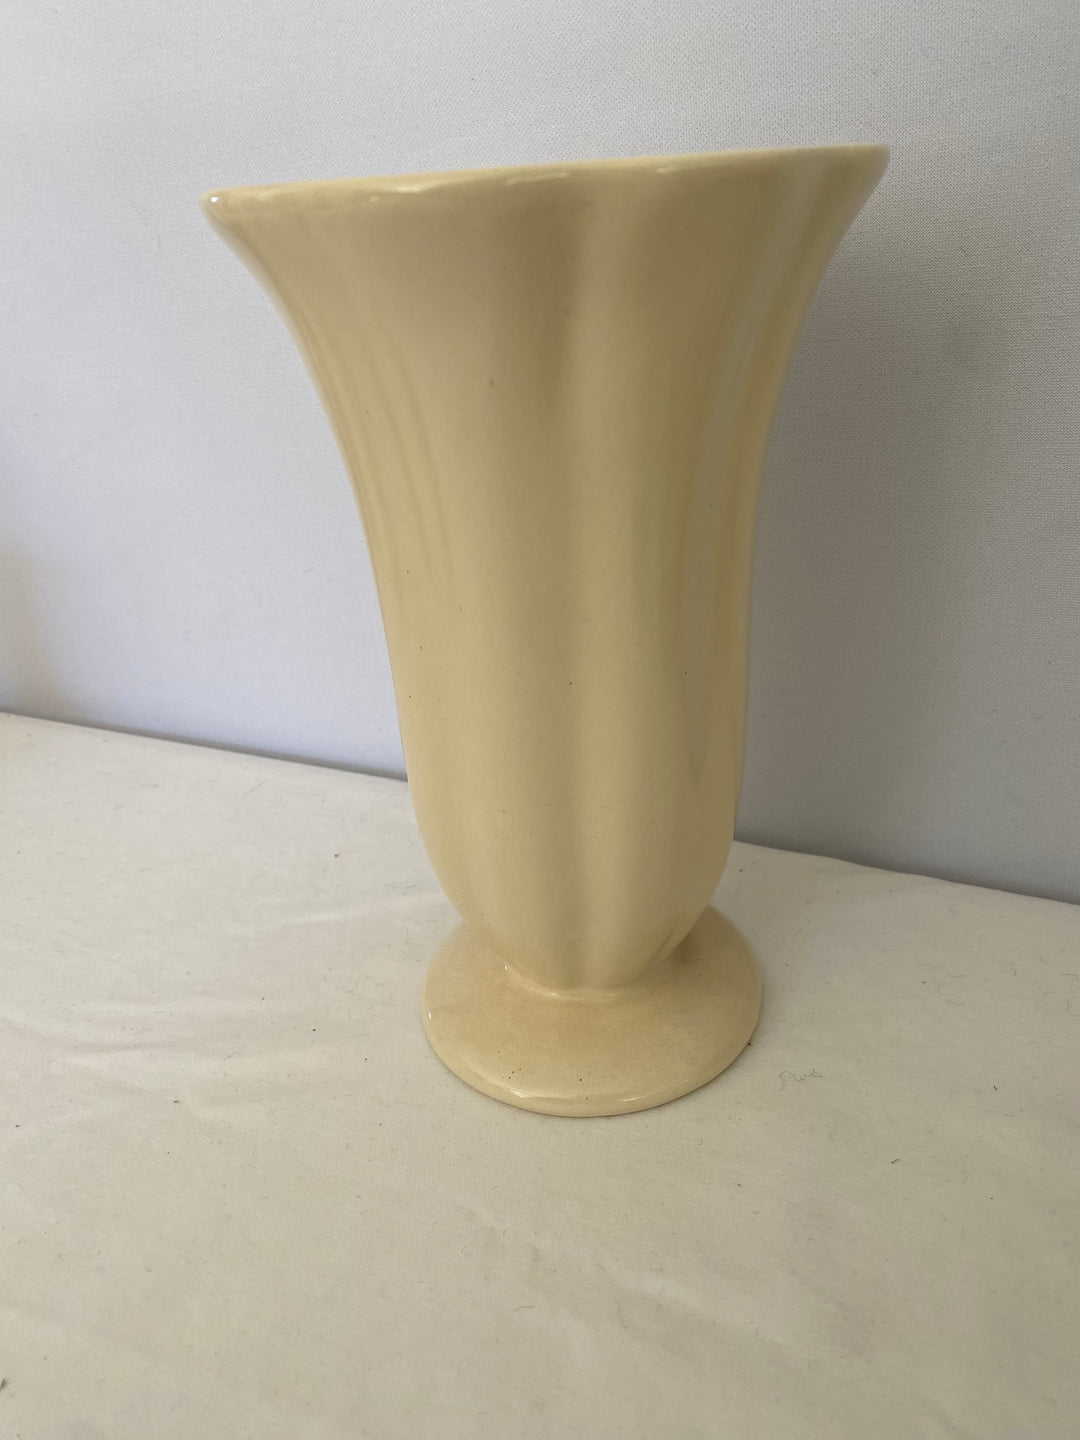 Catalina Island Florist Vase, white glaze